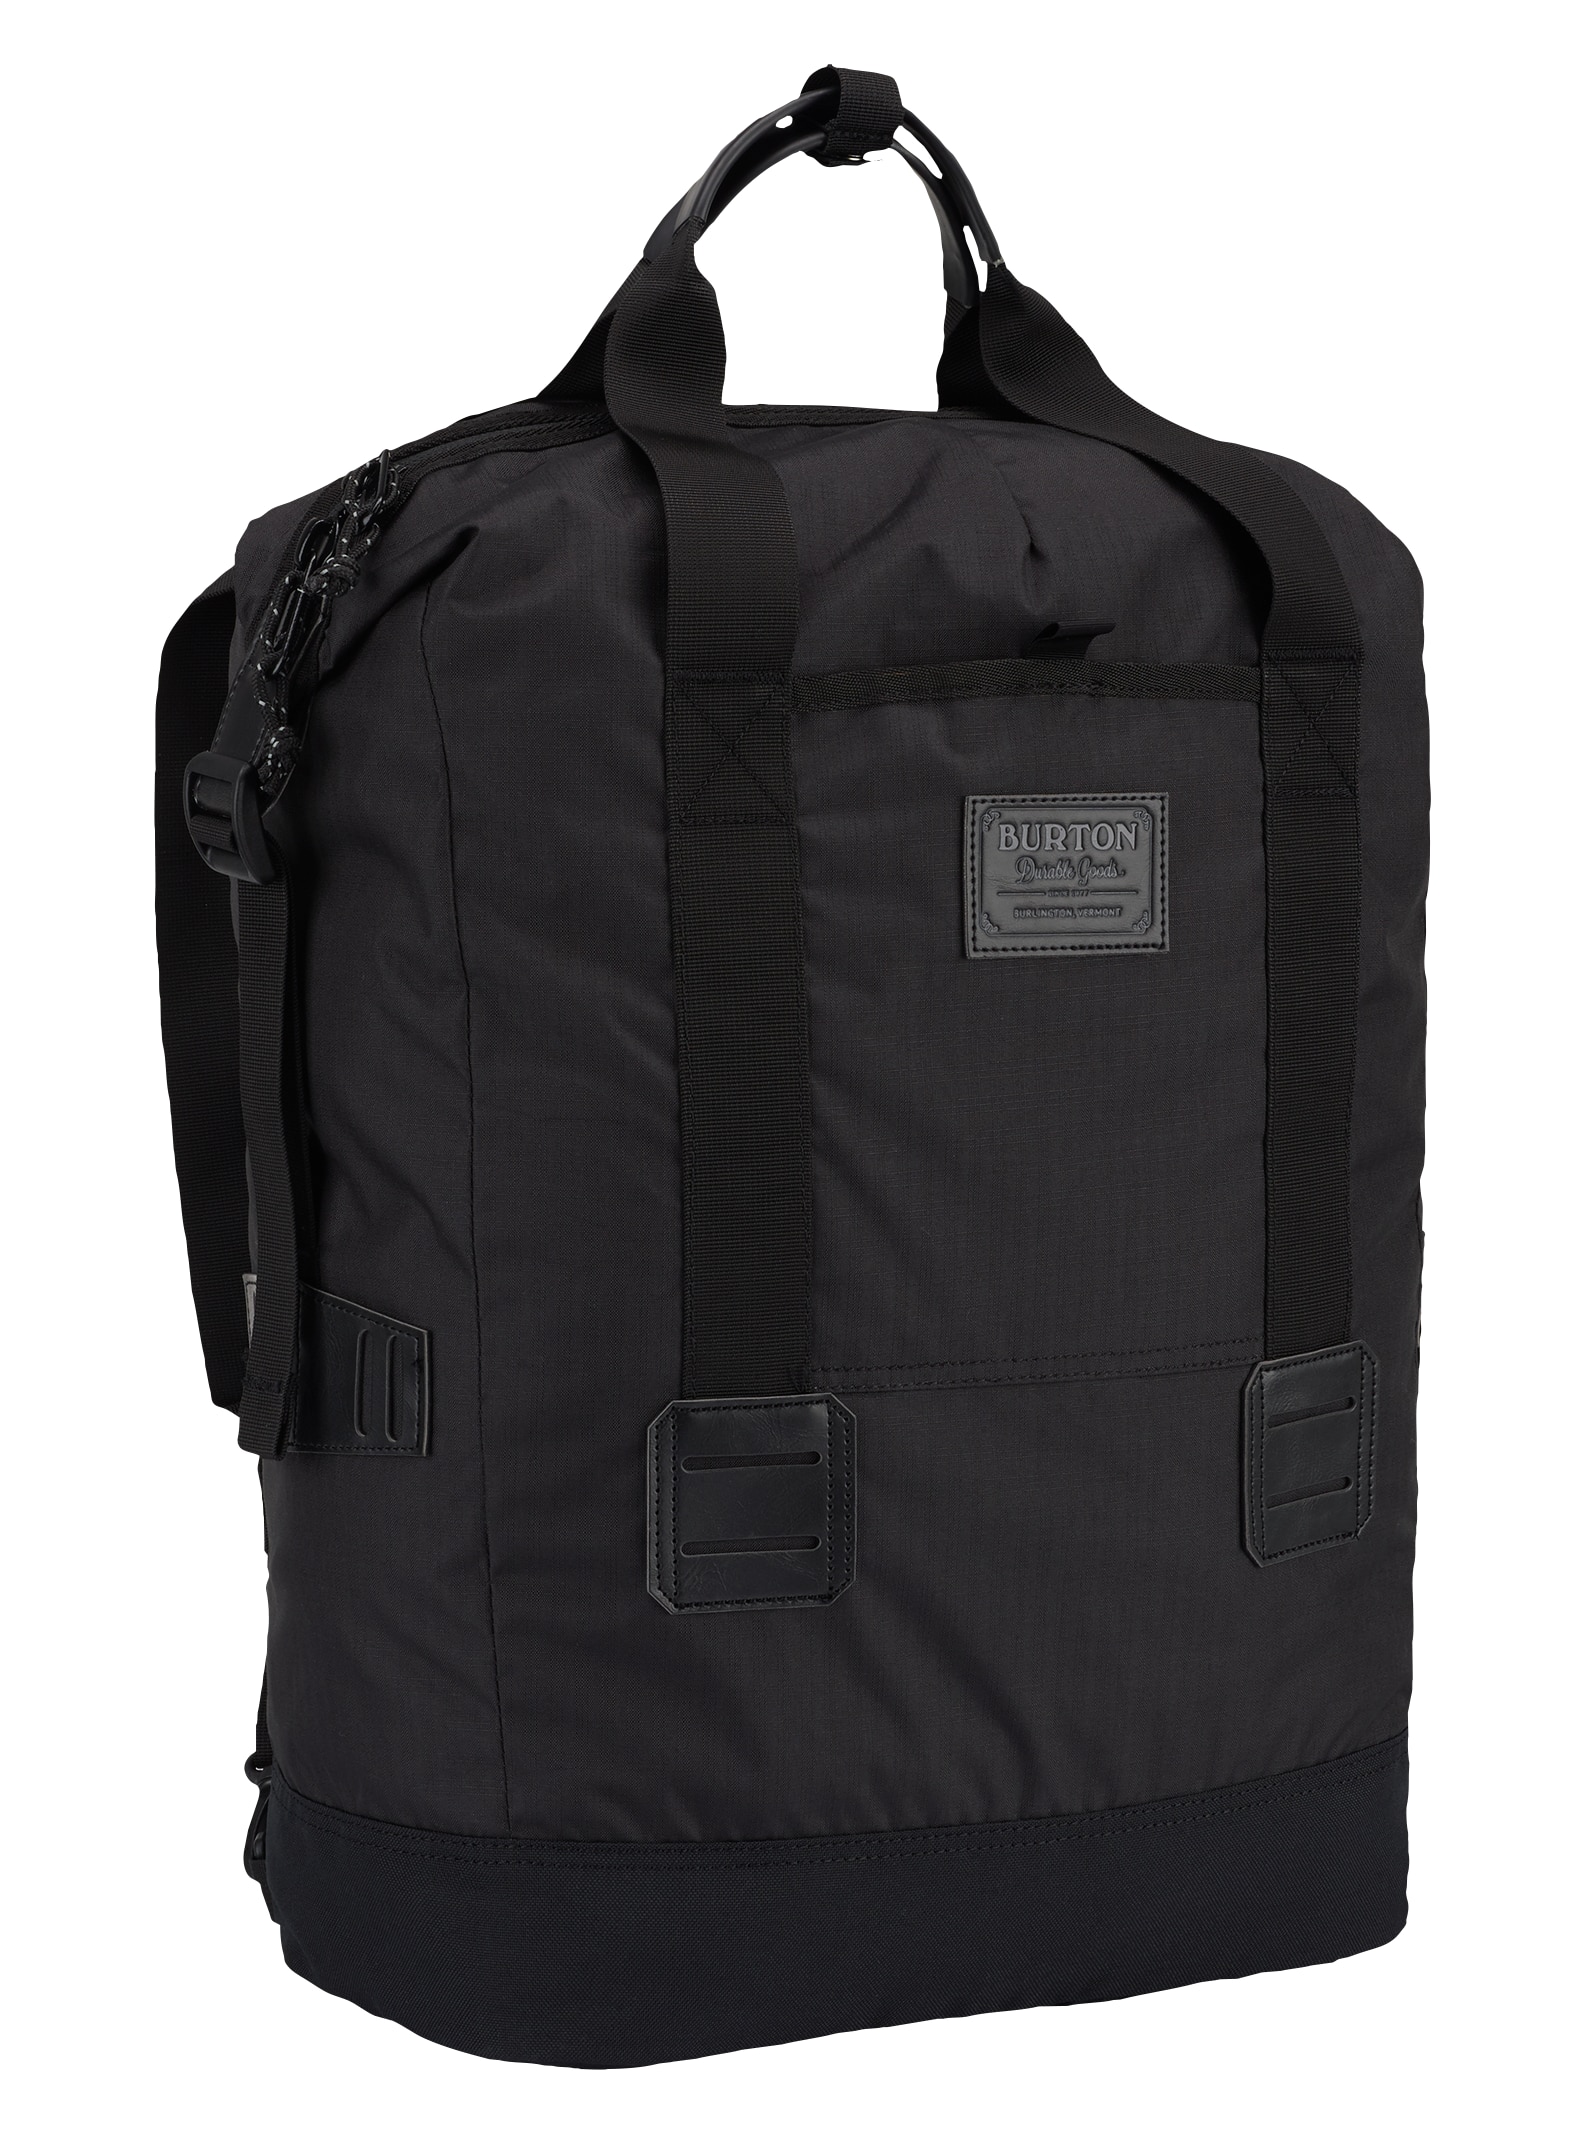 Burton / Tinder Tote 25L Backpack